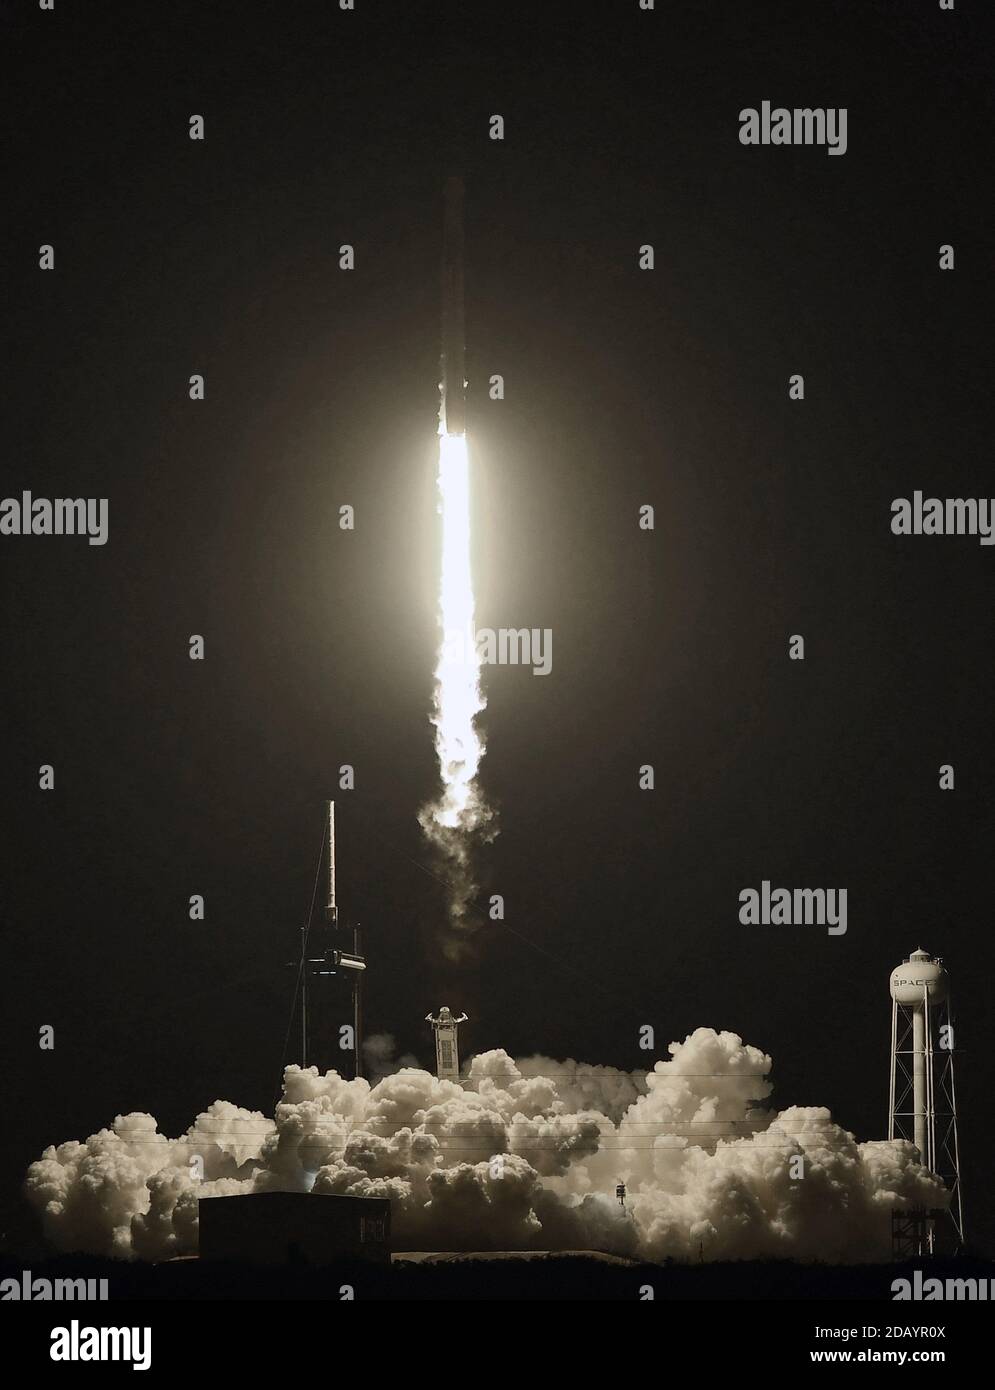 15 novembre 2020 - Cape Canaveral, Florida, Stati Uniti - UN razzo SpaceX Falcon 9 che porta la navicella spaziale Crew Dragon viene lanciato da PAD 39A al Kennedy Space Center il 15 novembre 2020 a Cape Canaveral, Florida. La missione Crew-1 sta inviando un equipaggio di quattro astronauti alla Stazione spaziale Internazionale. (Paul Hennessy/Alamy) Foto Stock